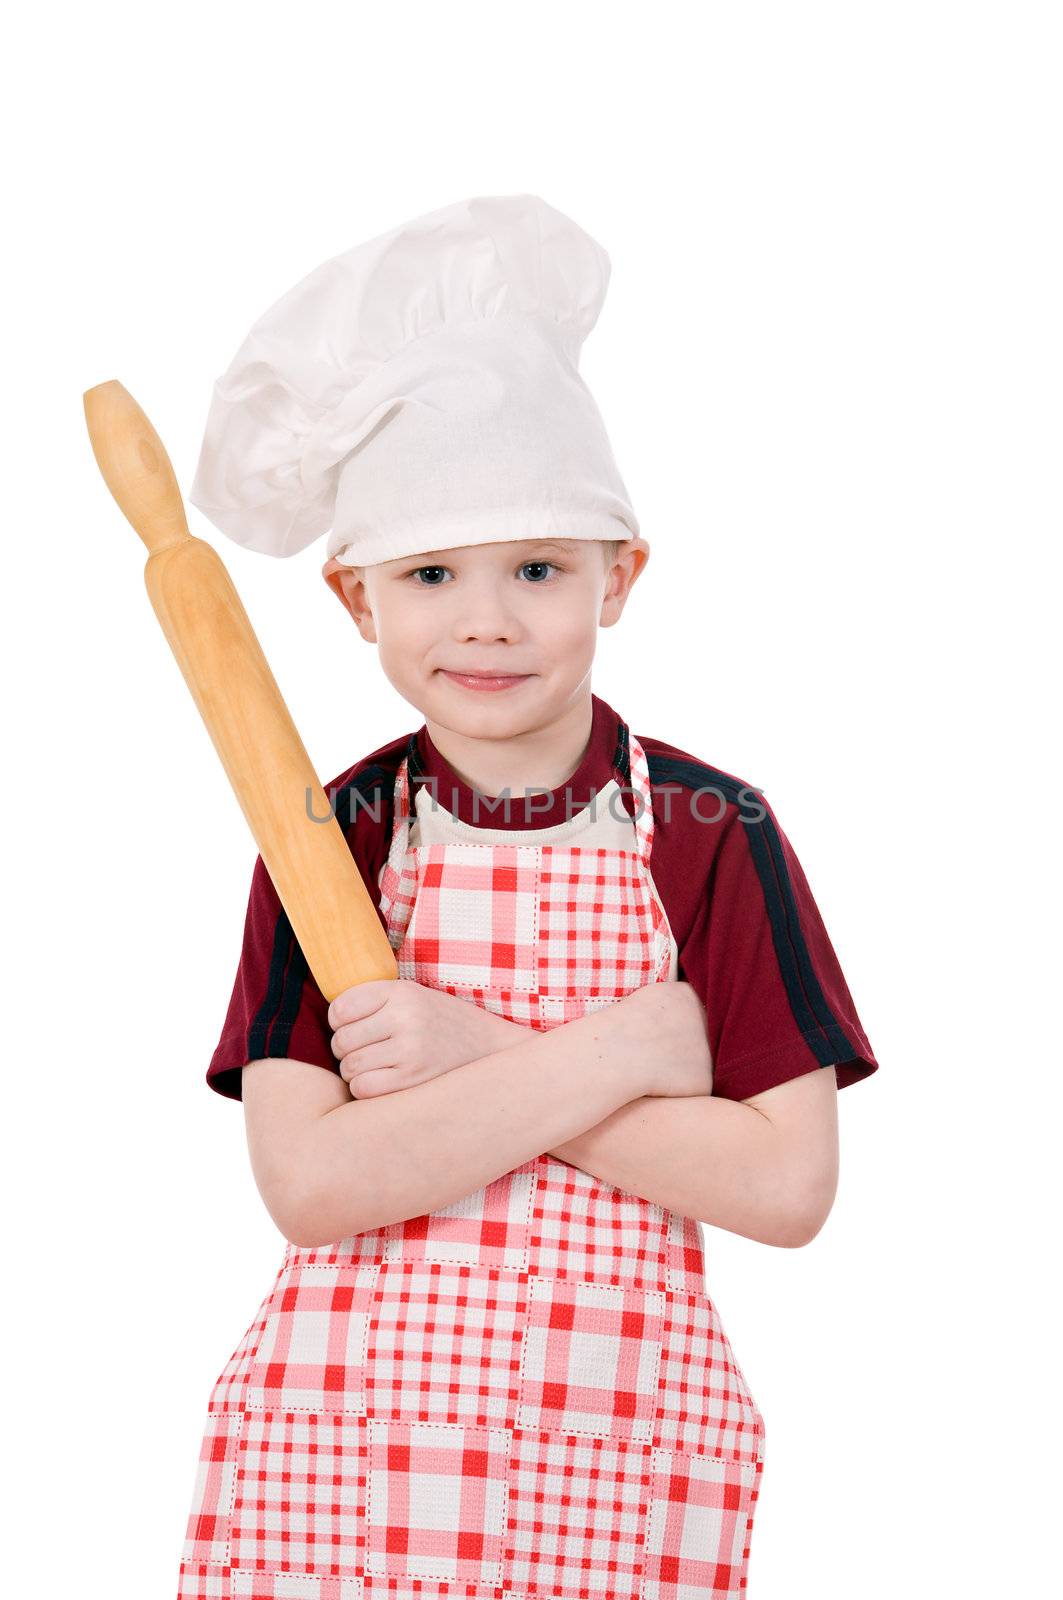 boy in chef's hat by uriy2007